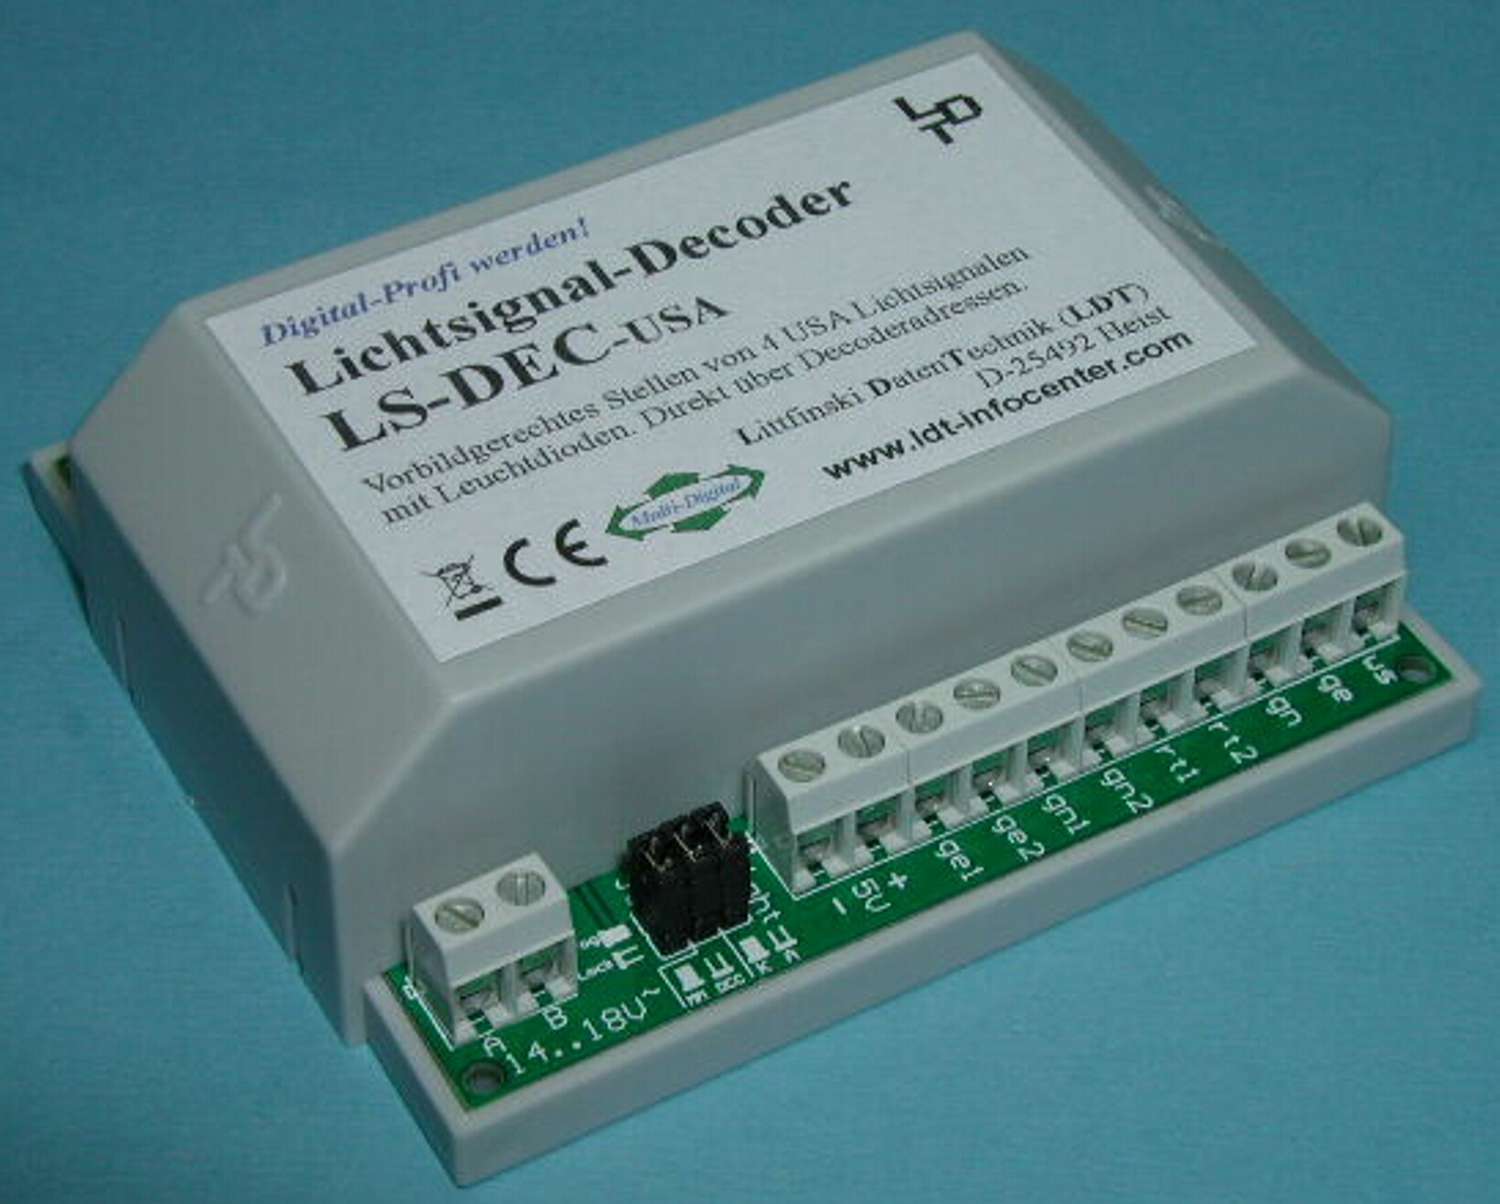 Littfinski 510613 - LS-DEC-USA-G - Lichtsignaldecoder, 4-fach, für USA-Signale, Fertigmodul im Gehäuse